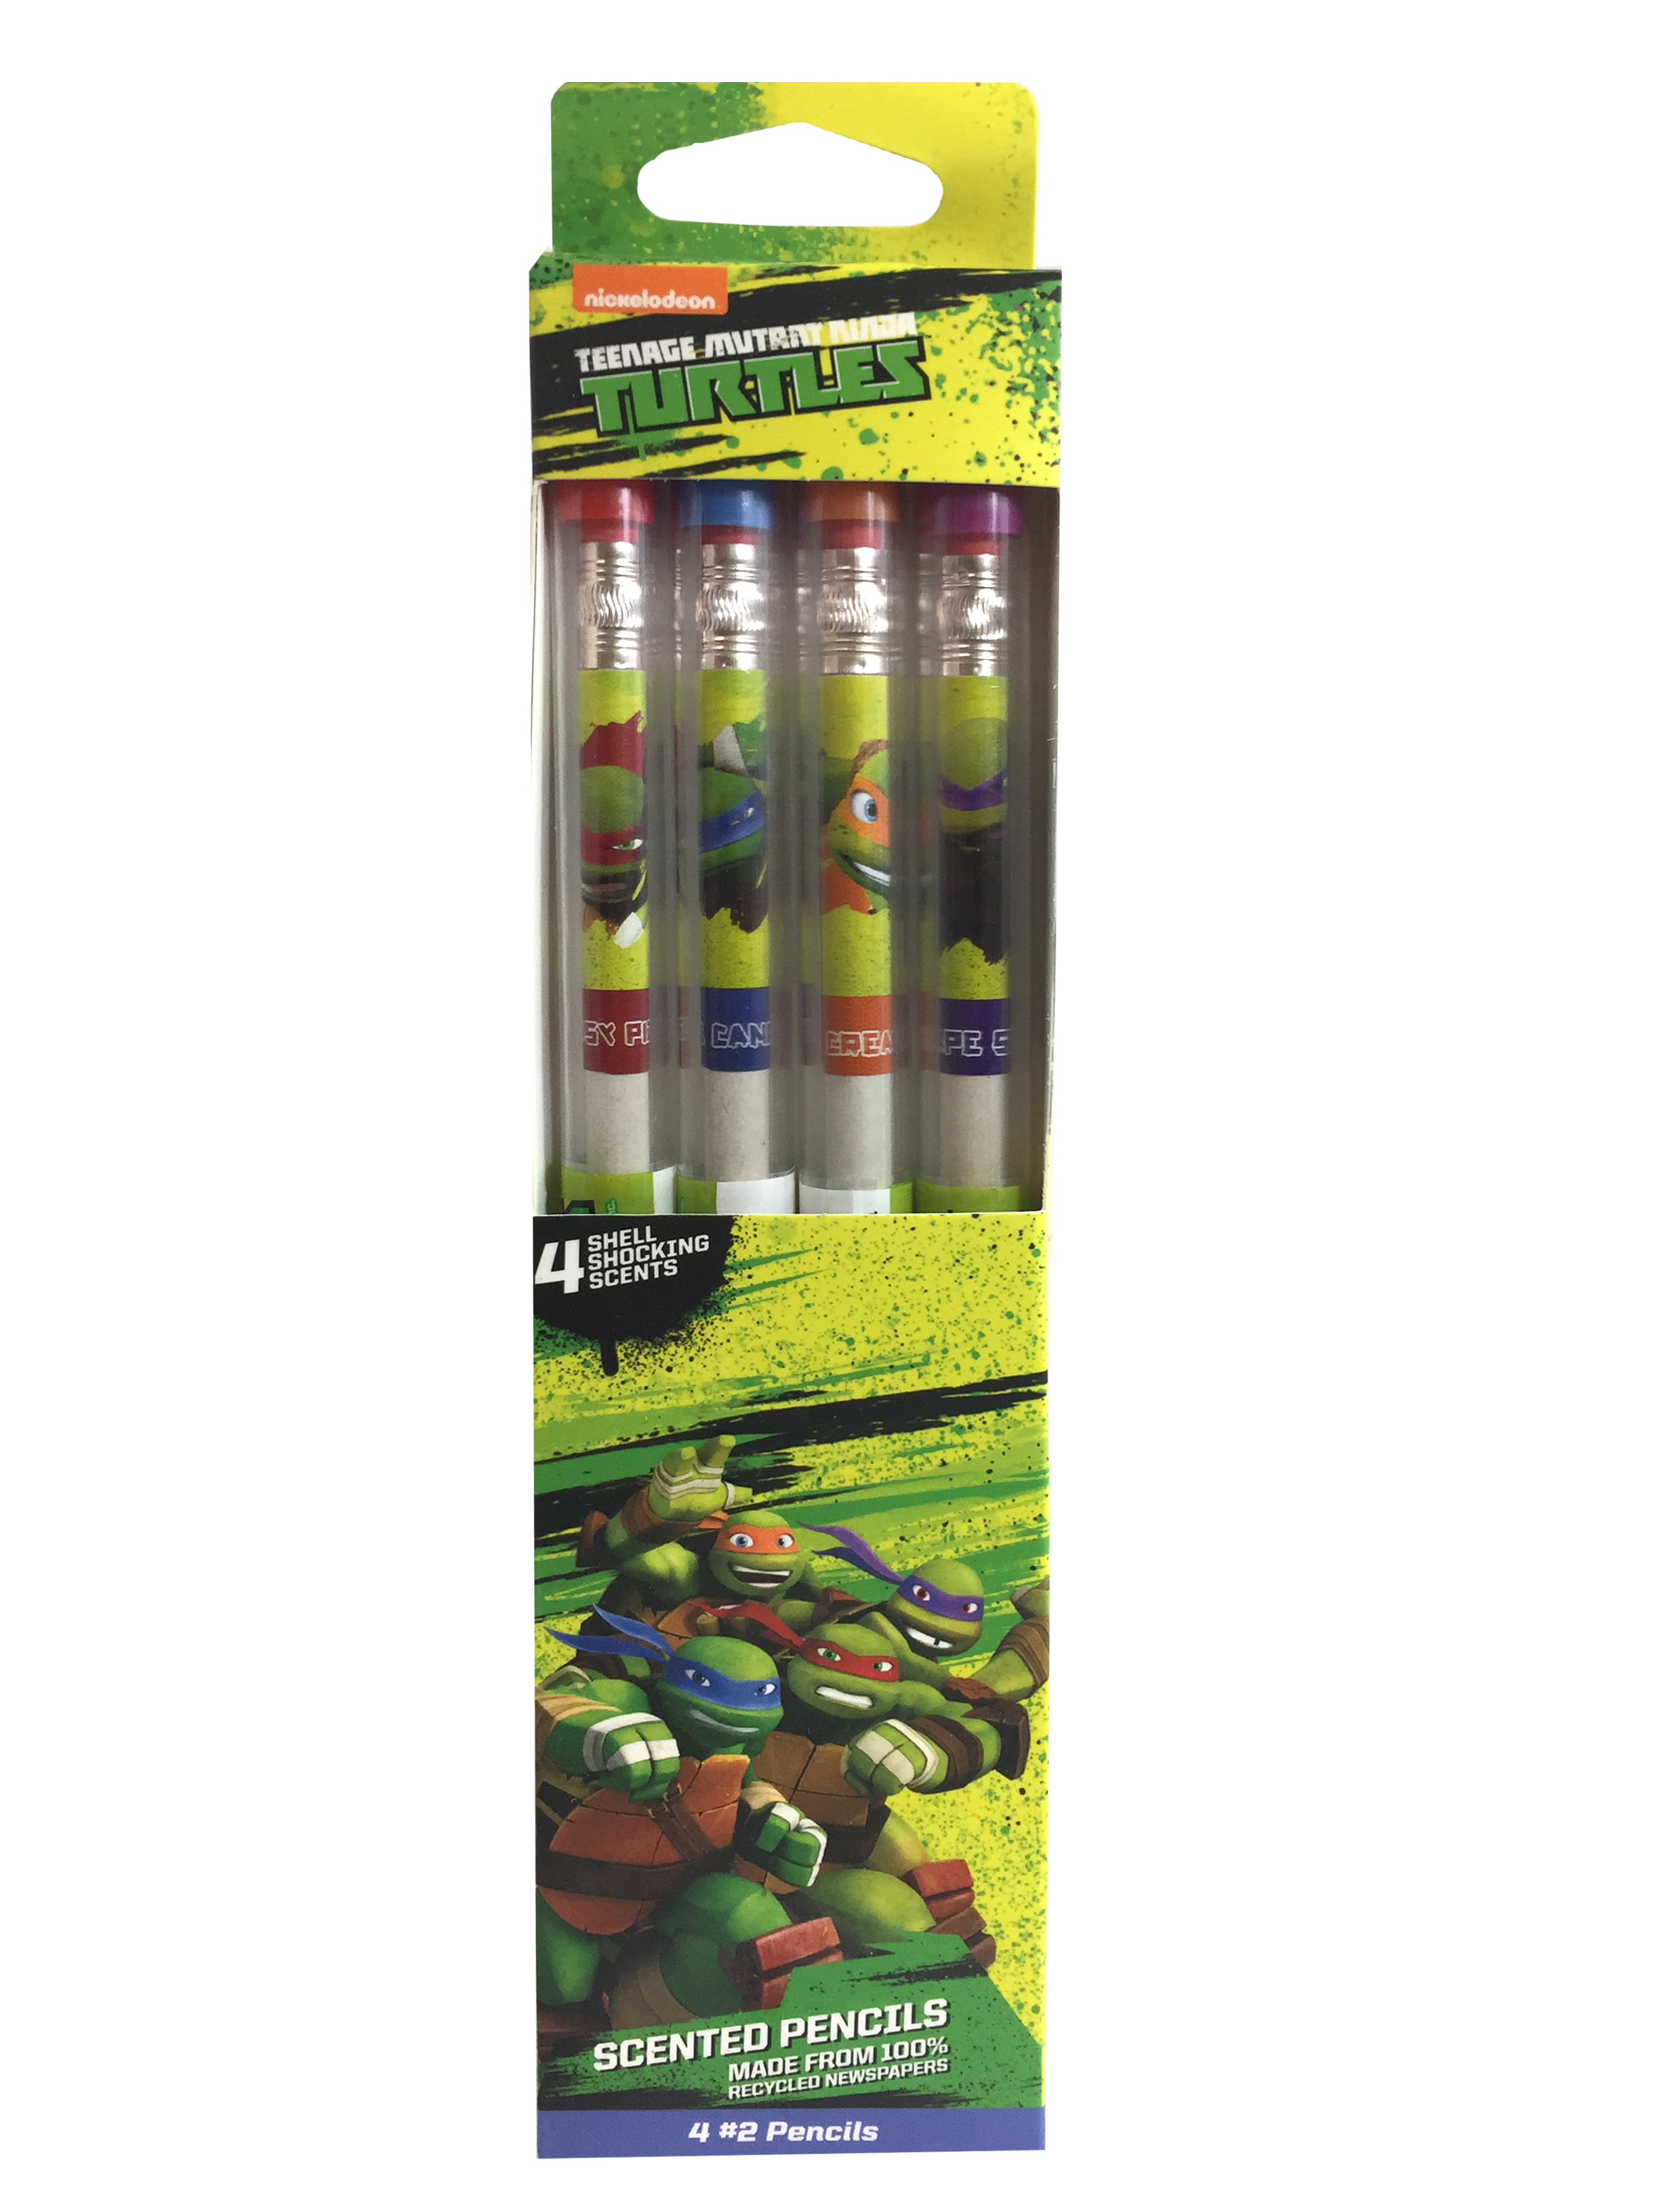 Teenage Mutant Ninja Turtles Smencils 12-Pack of #2 Scented Pencils 